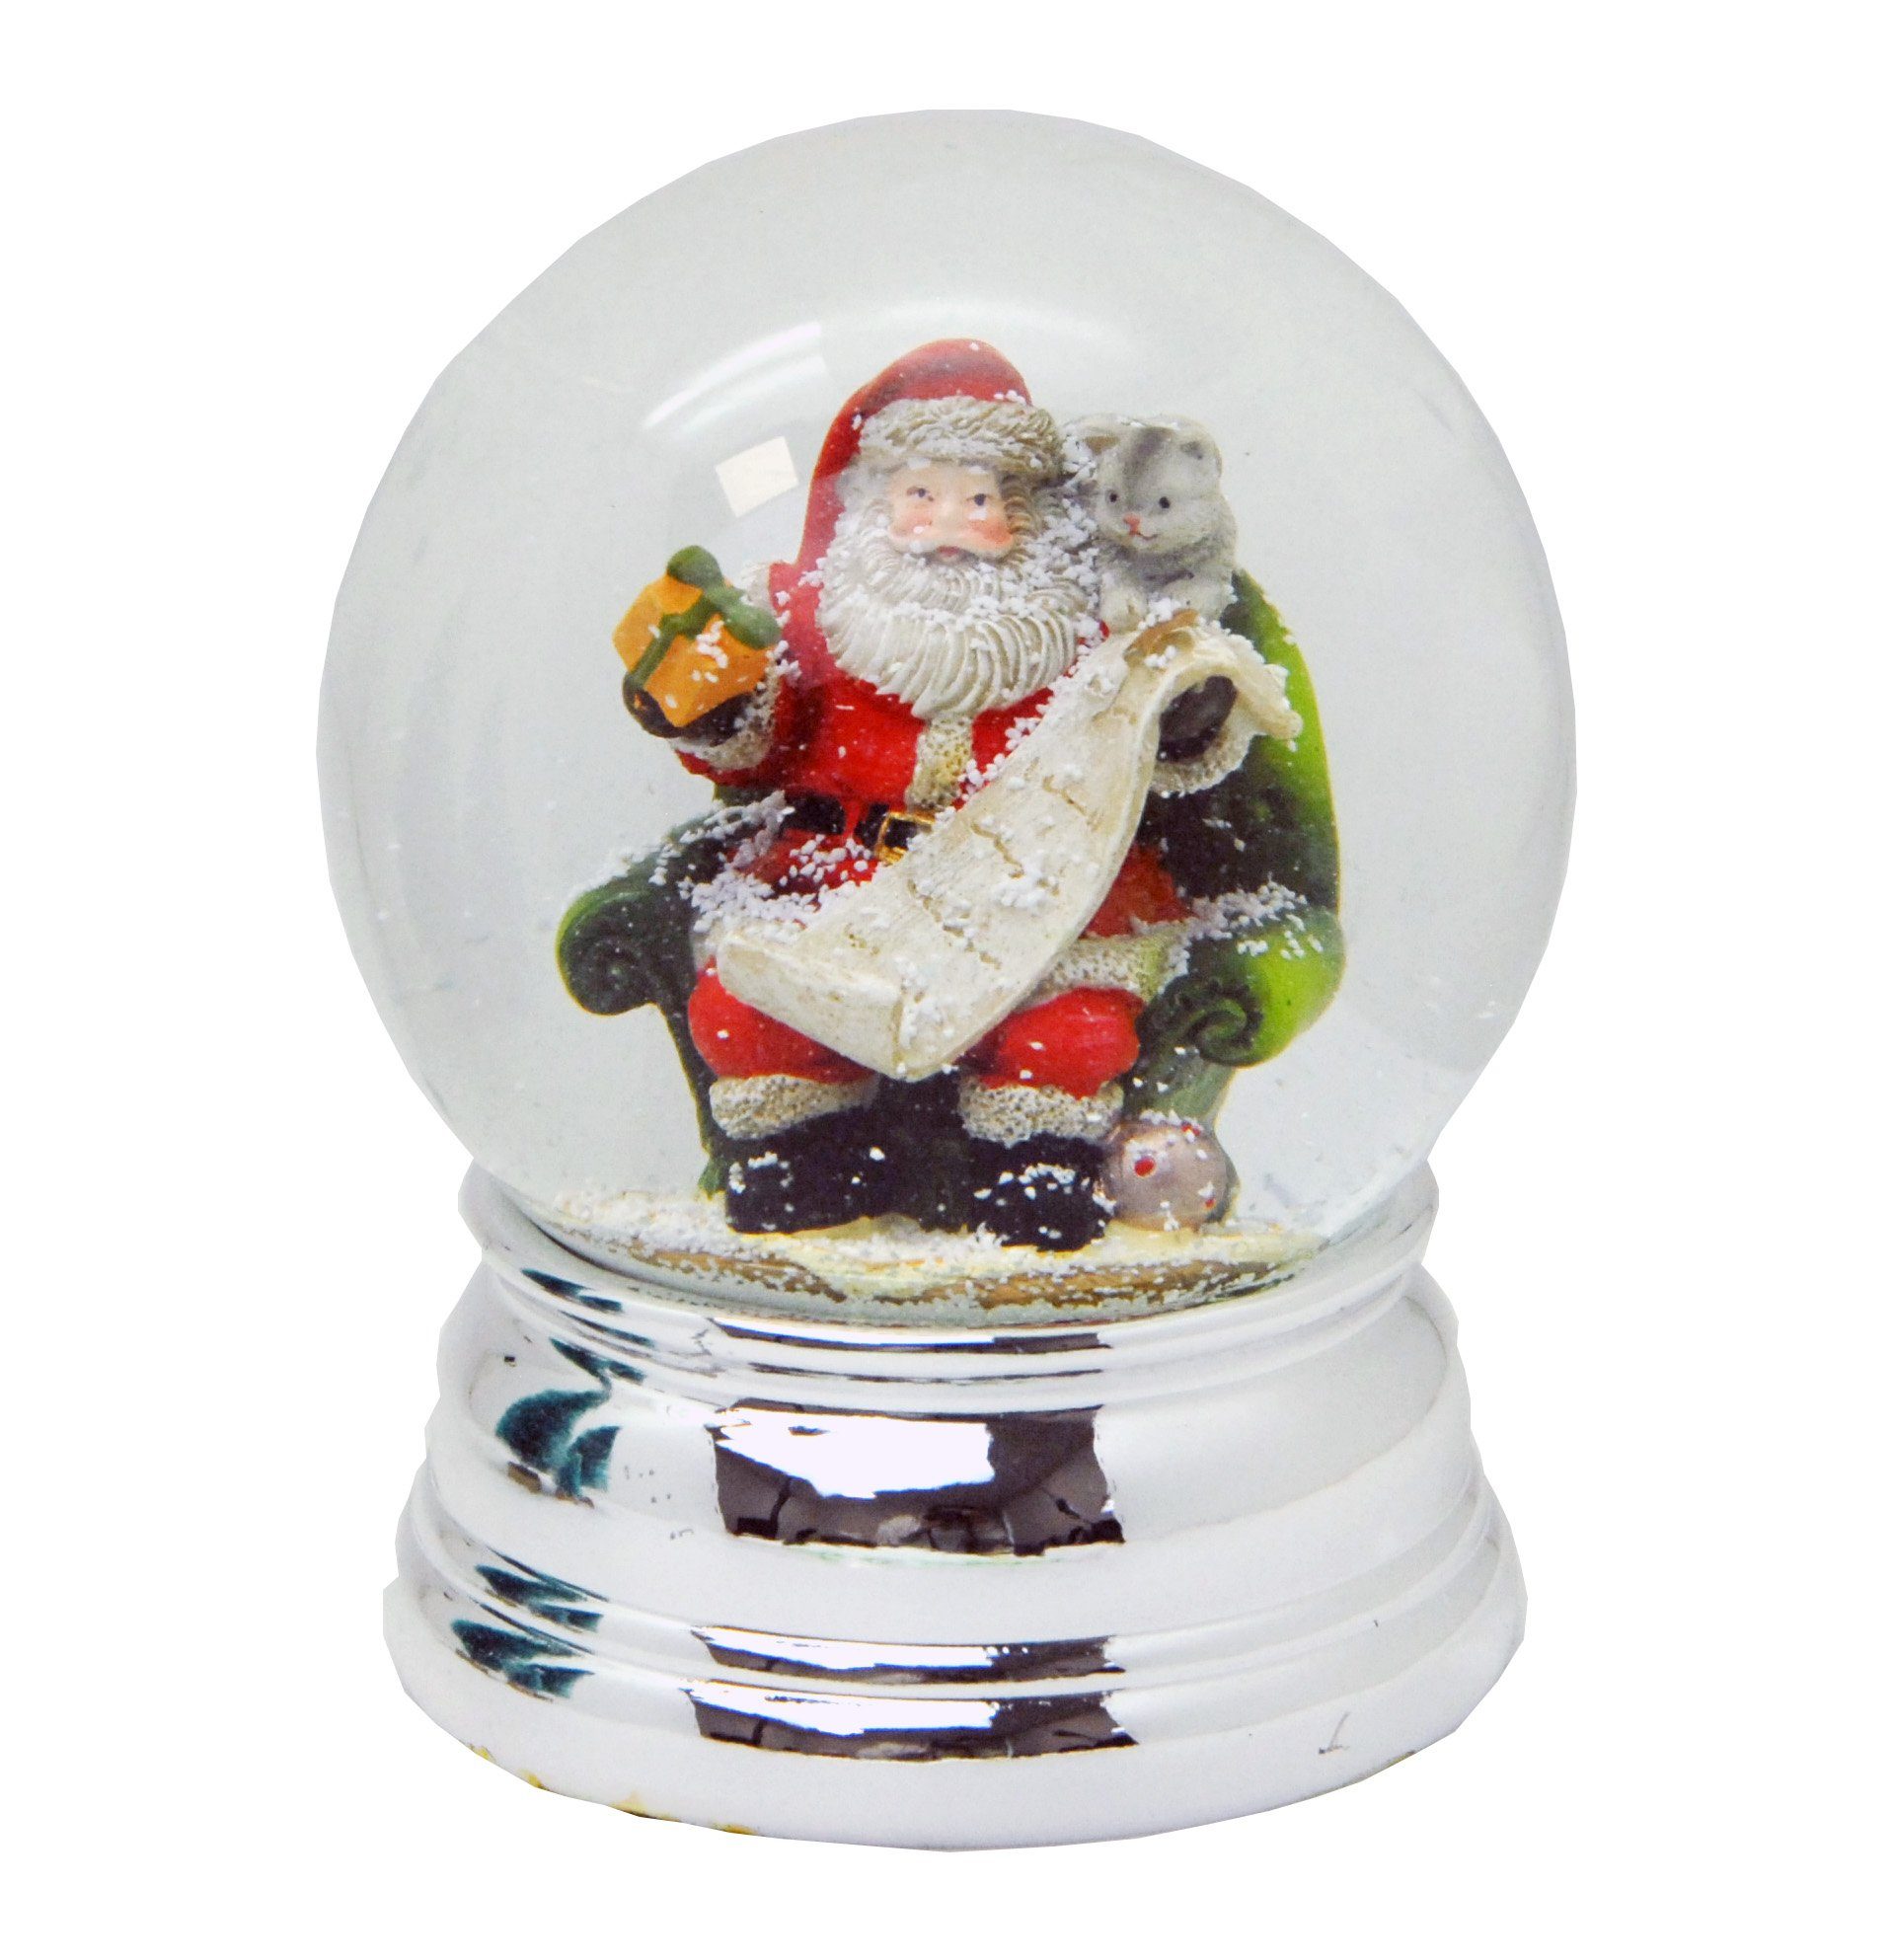 MINIUM-Collection Schneekugel 100 mm Weihnachtsmann Geschenkeliste silber breit glänzend Sockel